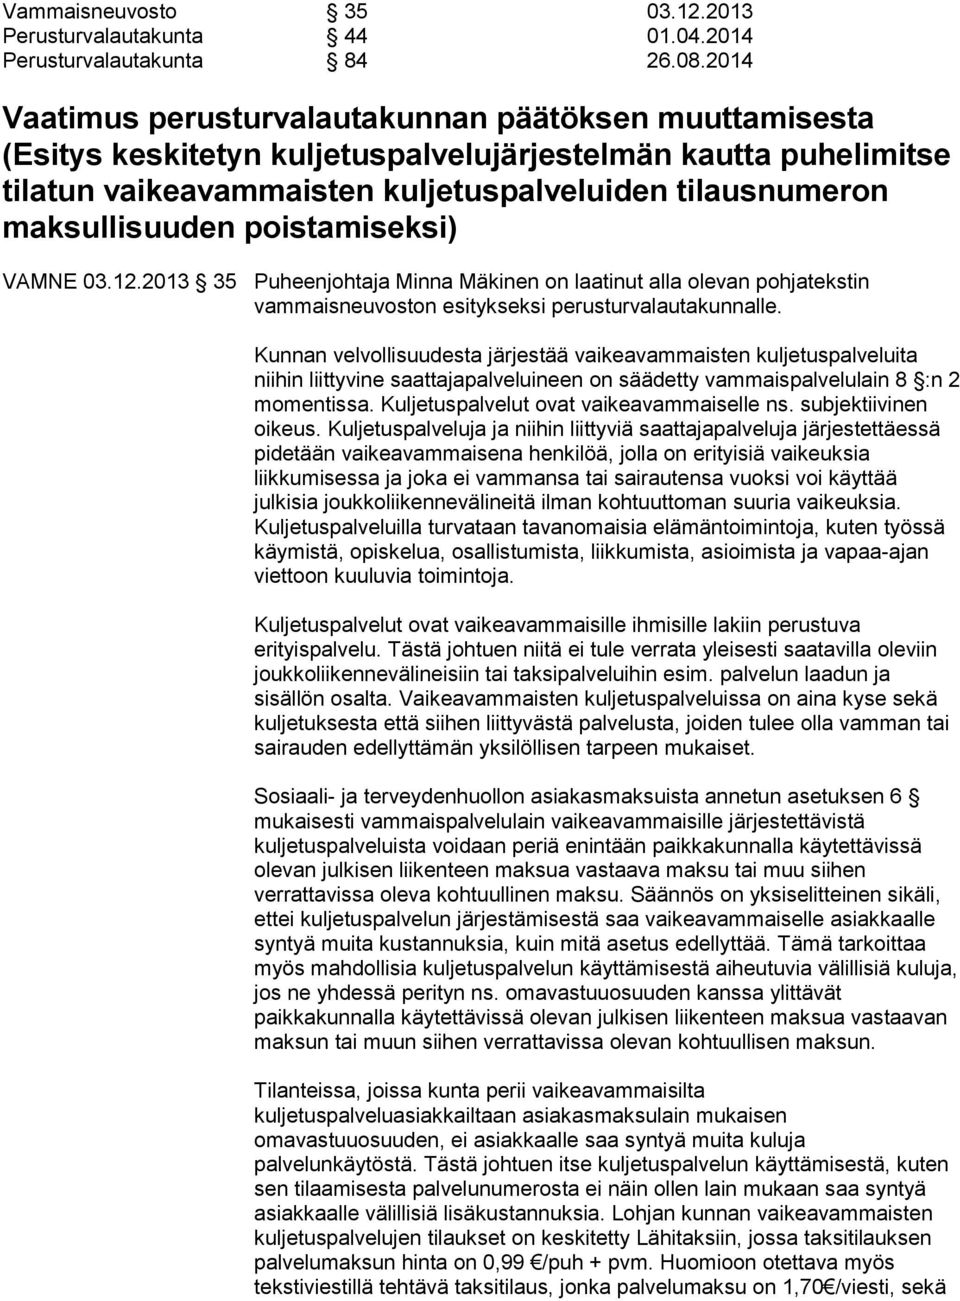 poistamiseksi) VAMNE 03.12.2013 35 Puheenjohtaja Minna Mäkinen on laatinut alla olevan pohjatekstin vammaisneuvoston esitykseksi perusturvalautakunnalle.